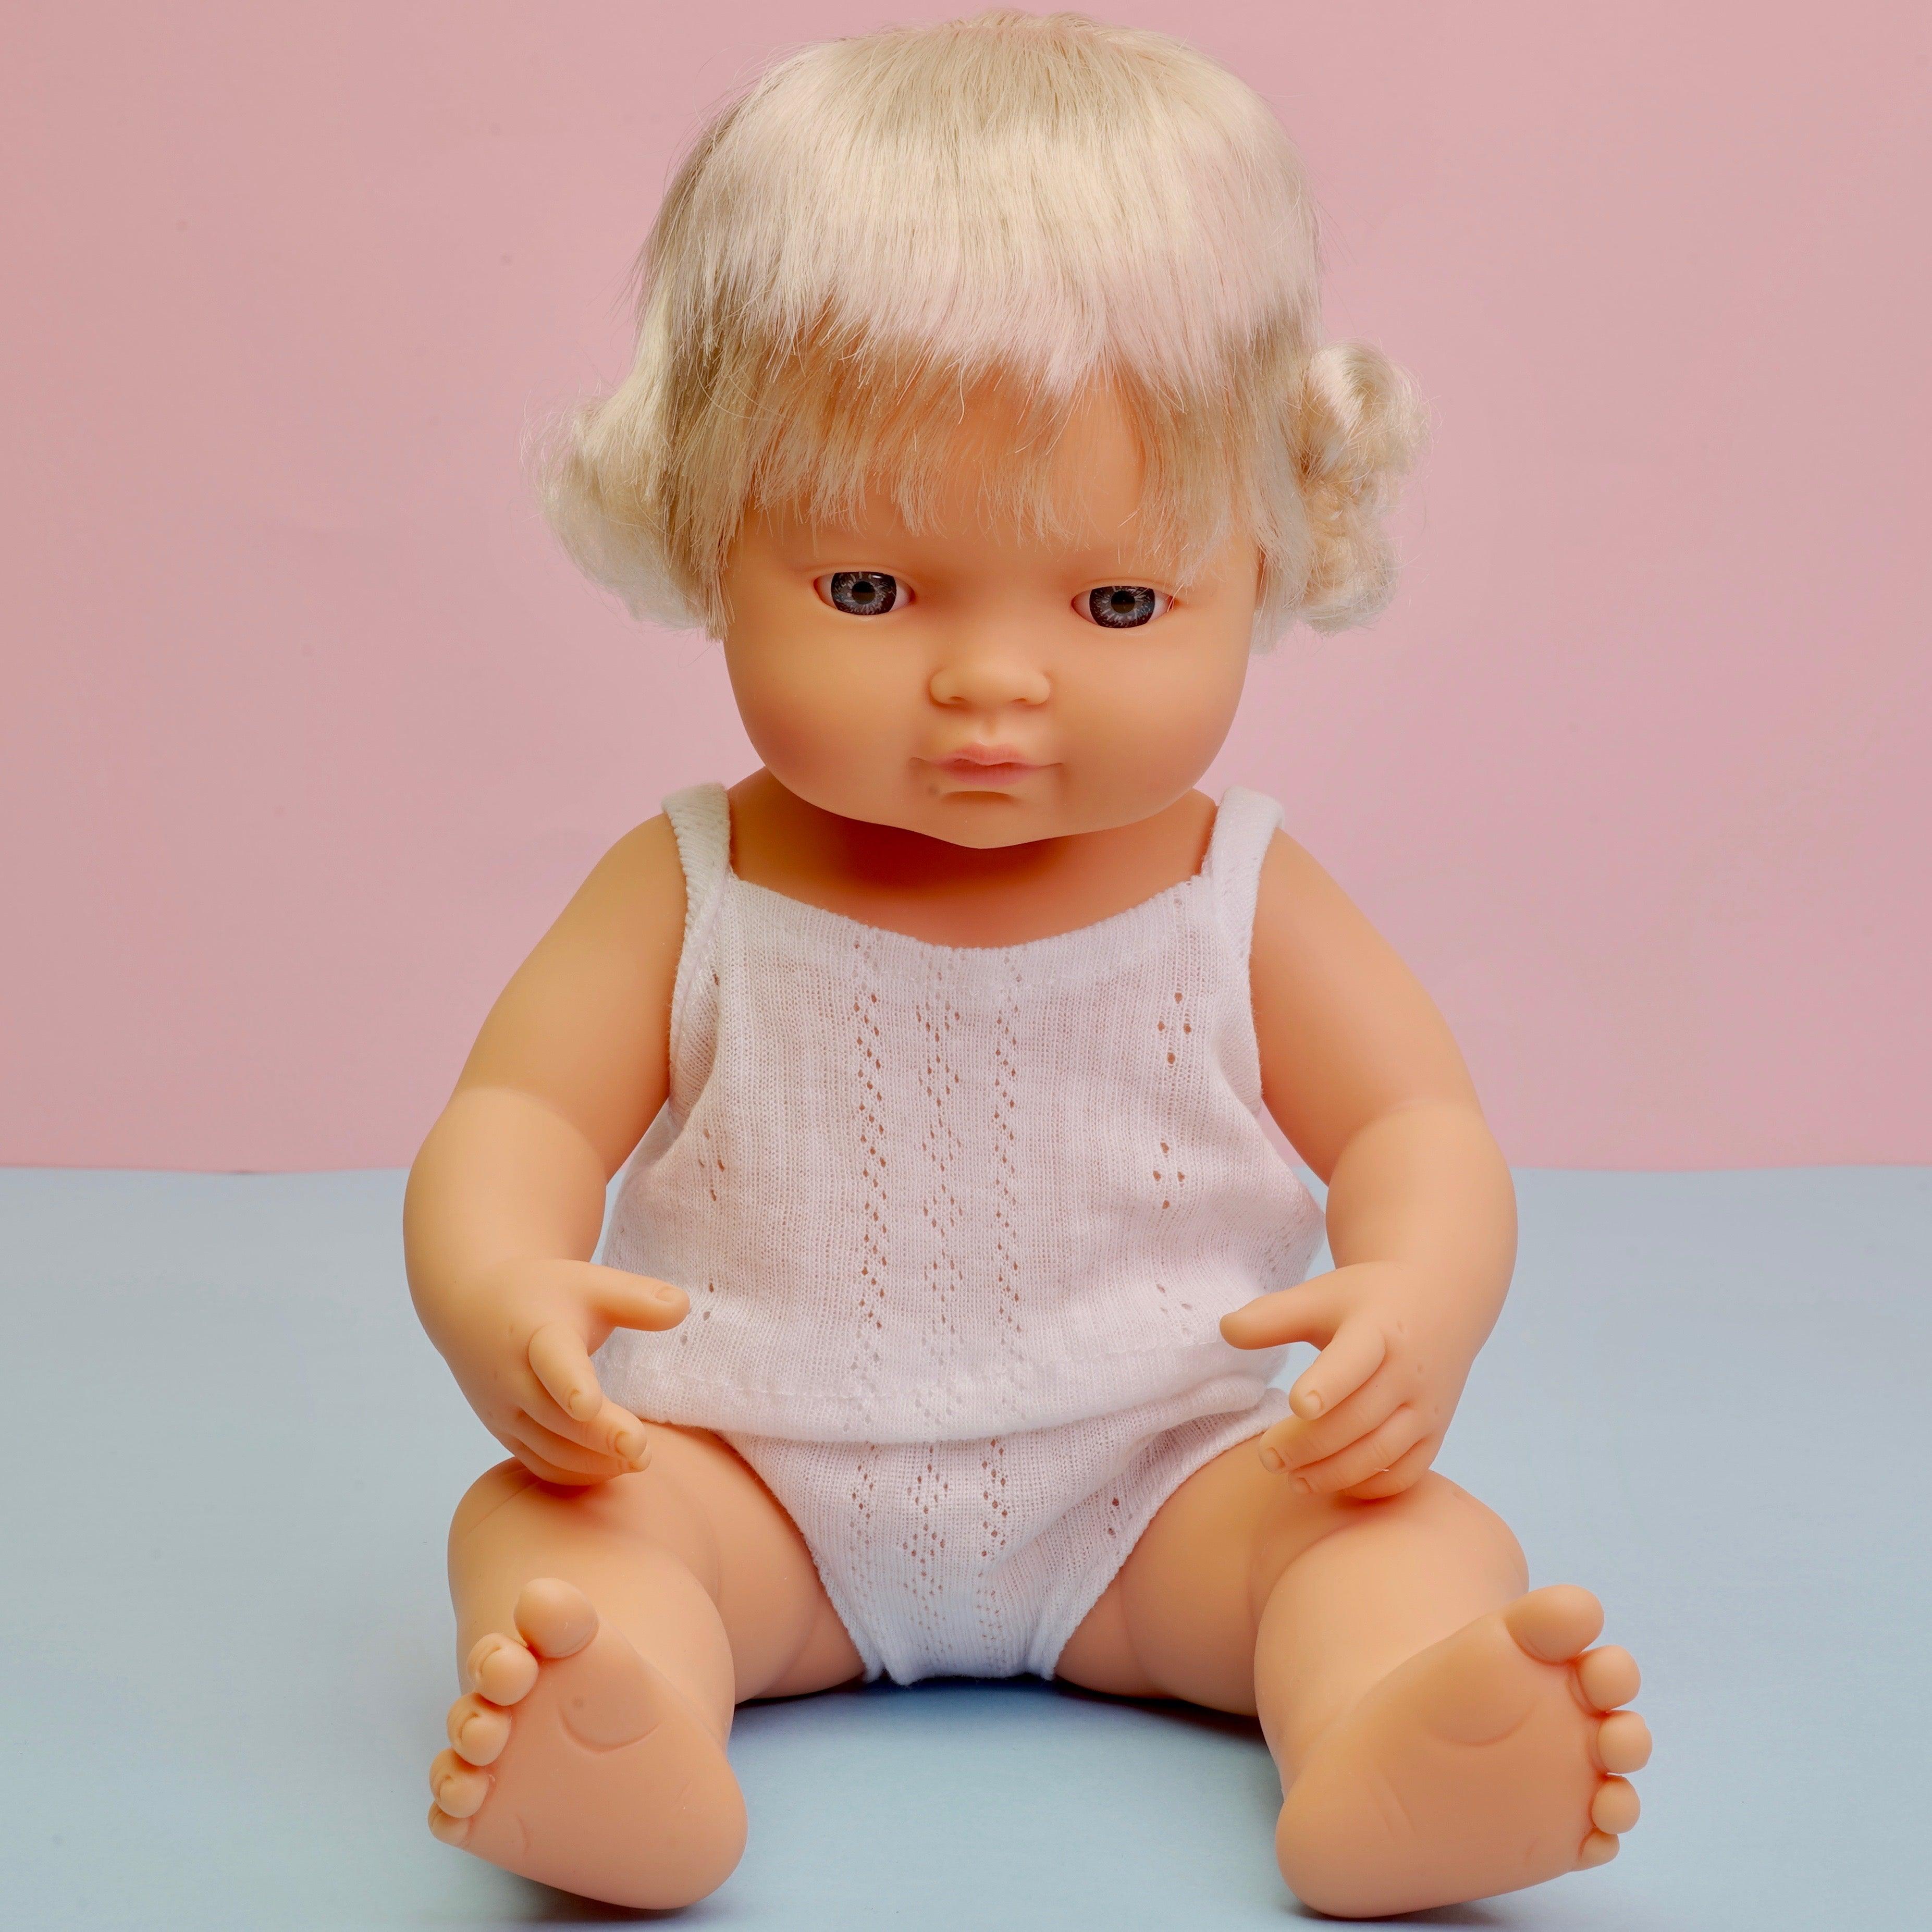 Miniland: lalka dziewczynka Europejka 38 cm - Noski Noski